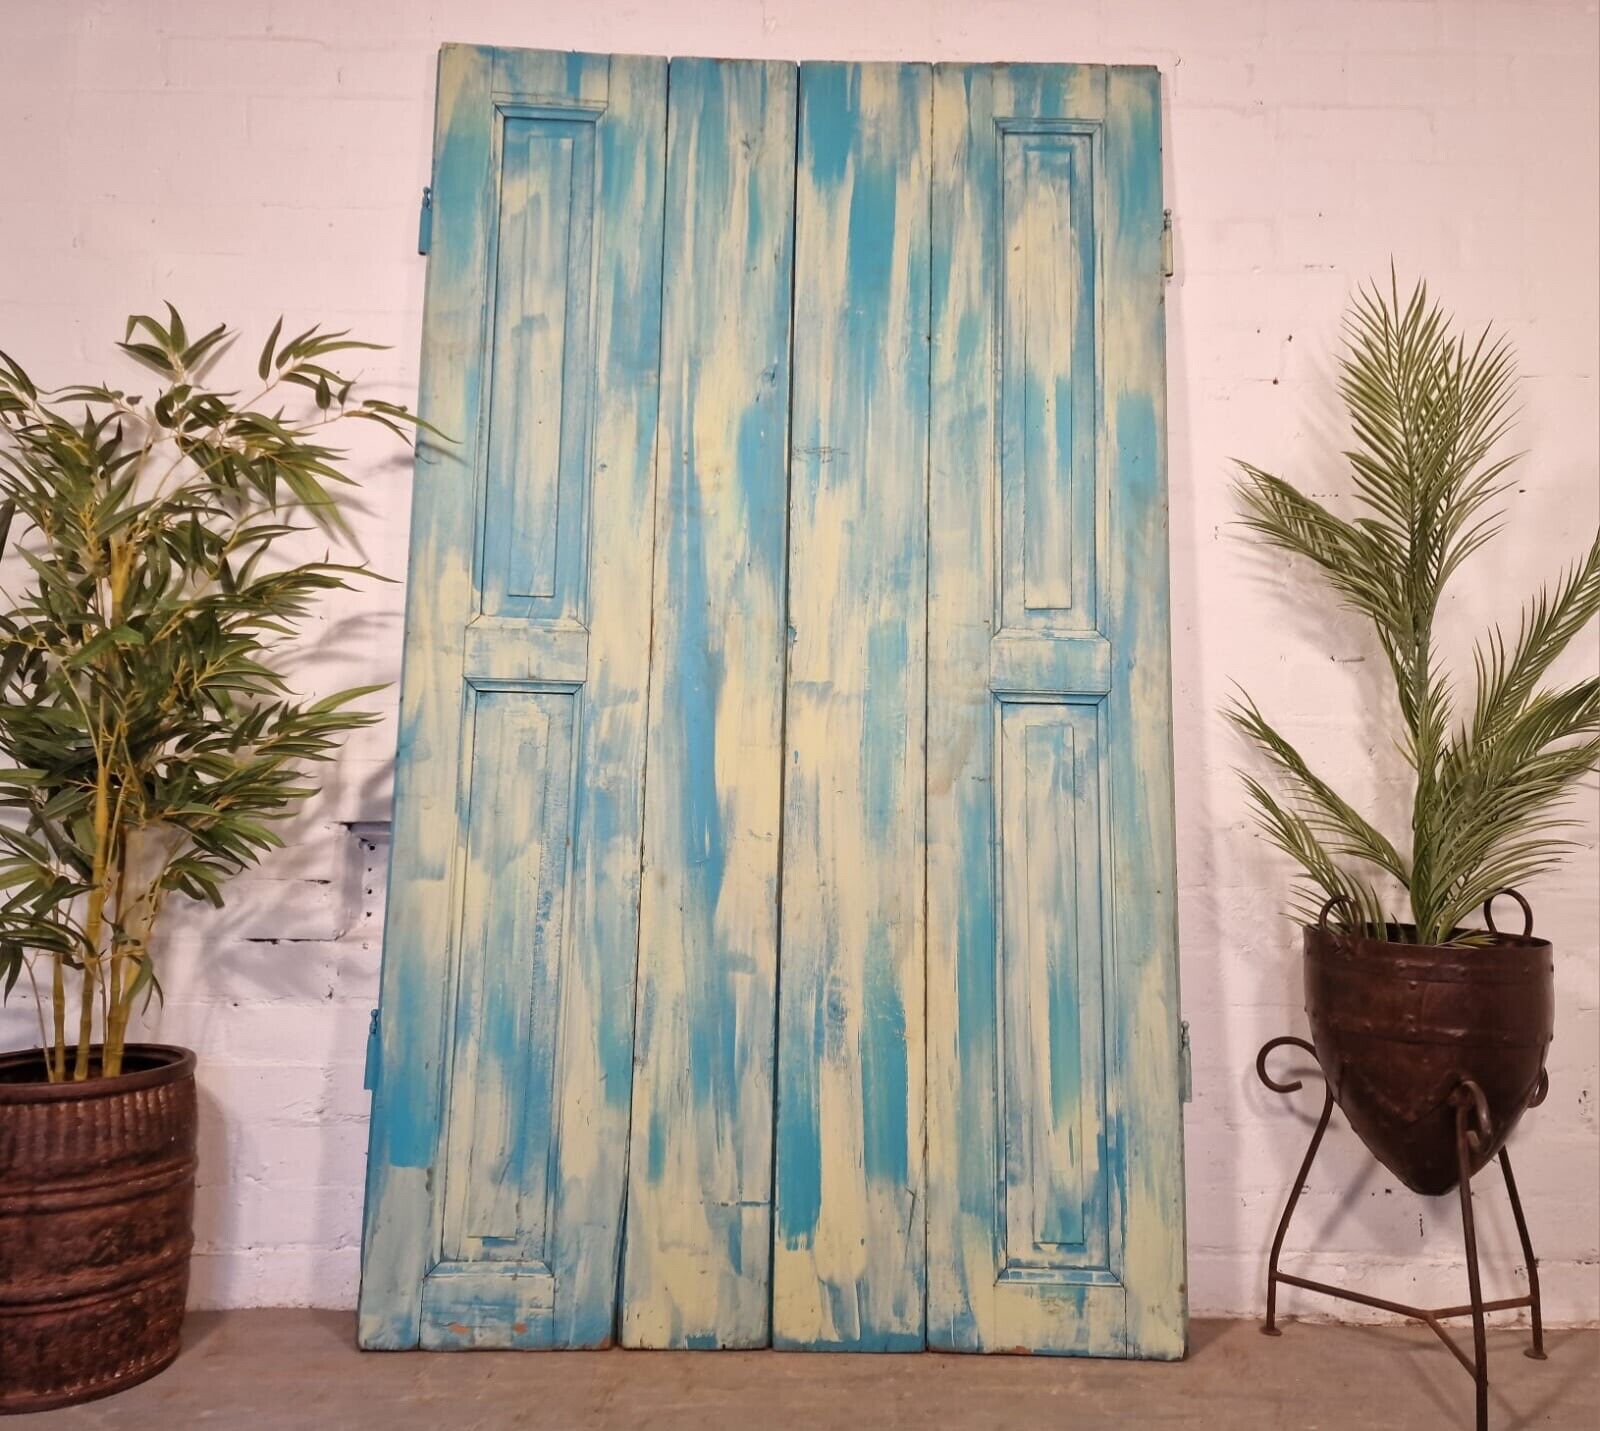 Vintage French Wooden Pine Bi Folding Window Door Shutters Screen Room Divider